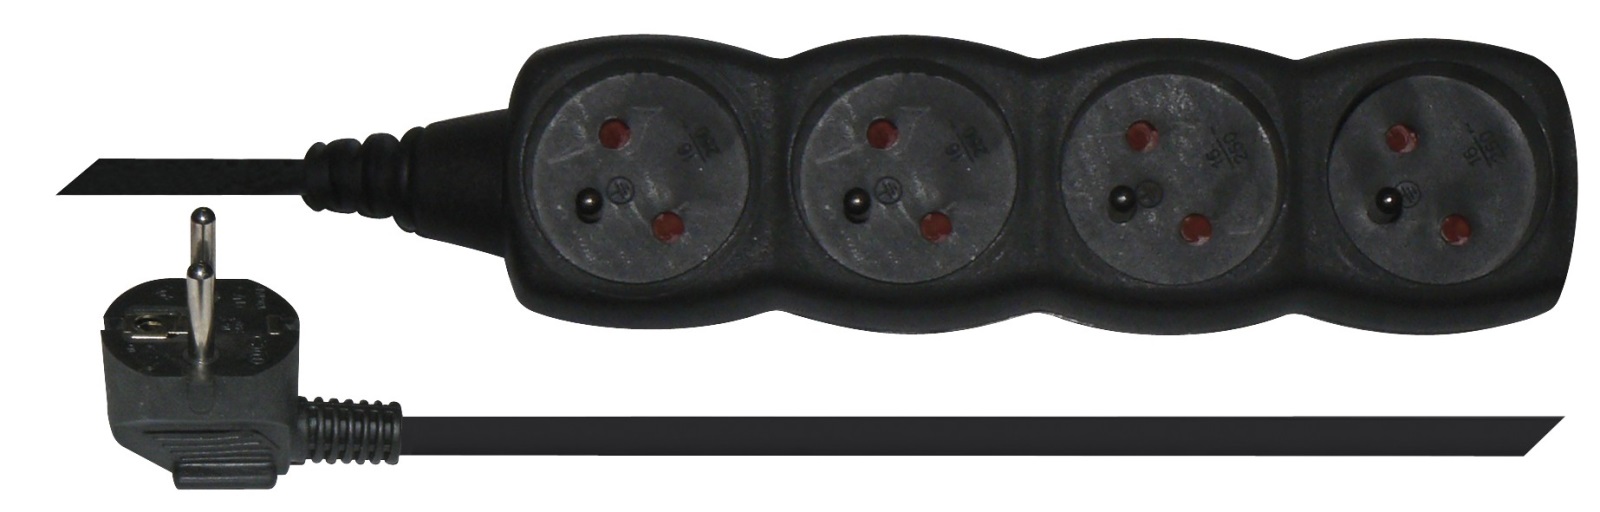 Prodlužovací kabel 5 m / 4 zásuvky / černý / PVC / 1 mm2, 1902240500